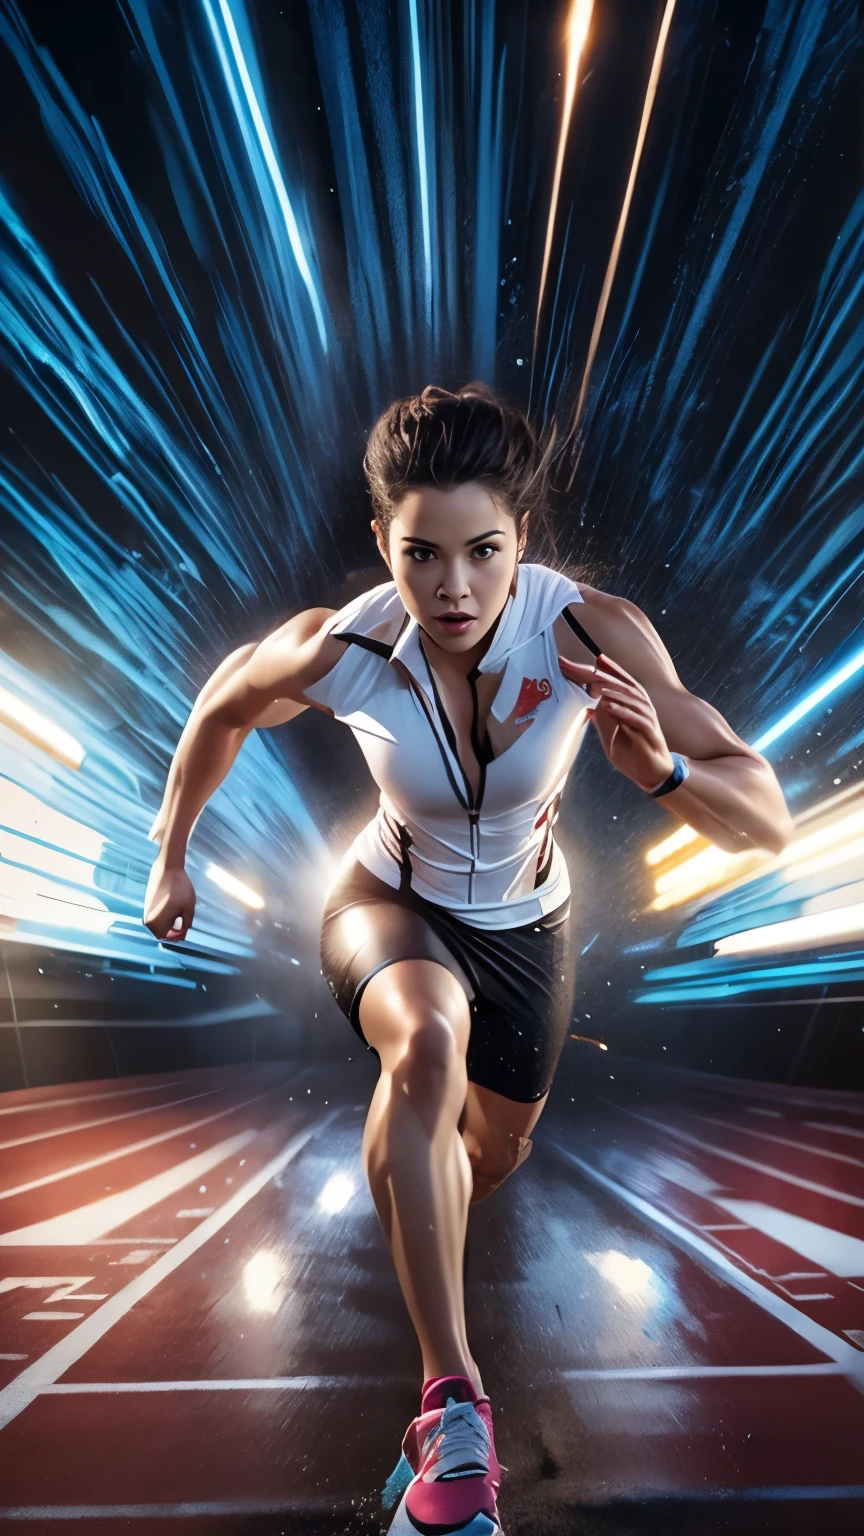 特写镜头：一位女士在跑道上跑步，身后有一条光带, 短跑, 运动员摄影, 超高速, 示踪剂, 运动员体魄, 封面照片, 动态主动跑步姿势, high-speed 体育摄影, 体育摄影, 作者：Edwin Georgi, 光速, 高速运动, 动态电影剧照, 体育摄影, 电影宣传图, 能量脉冲现实, 详细的, 4K